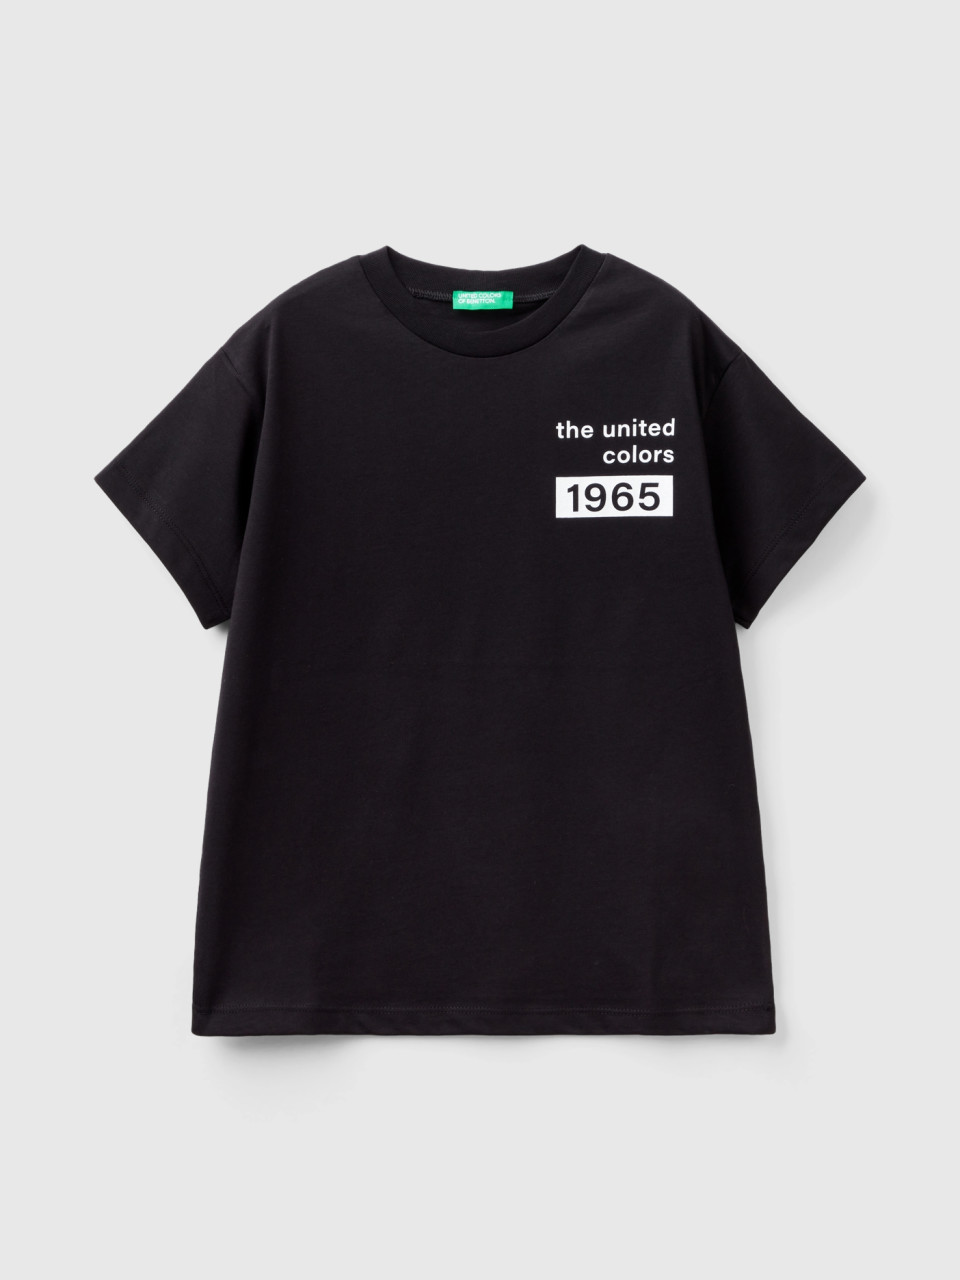 Benetton, T-shirt Aus 100% Baumwolle Mit Logo, Schwarz, male